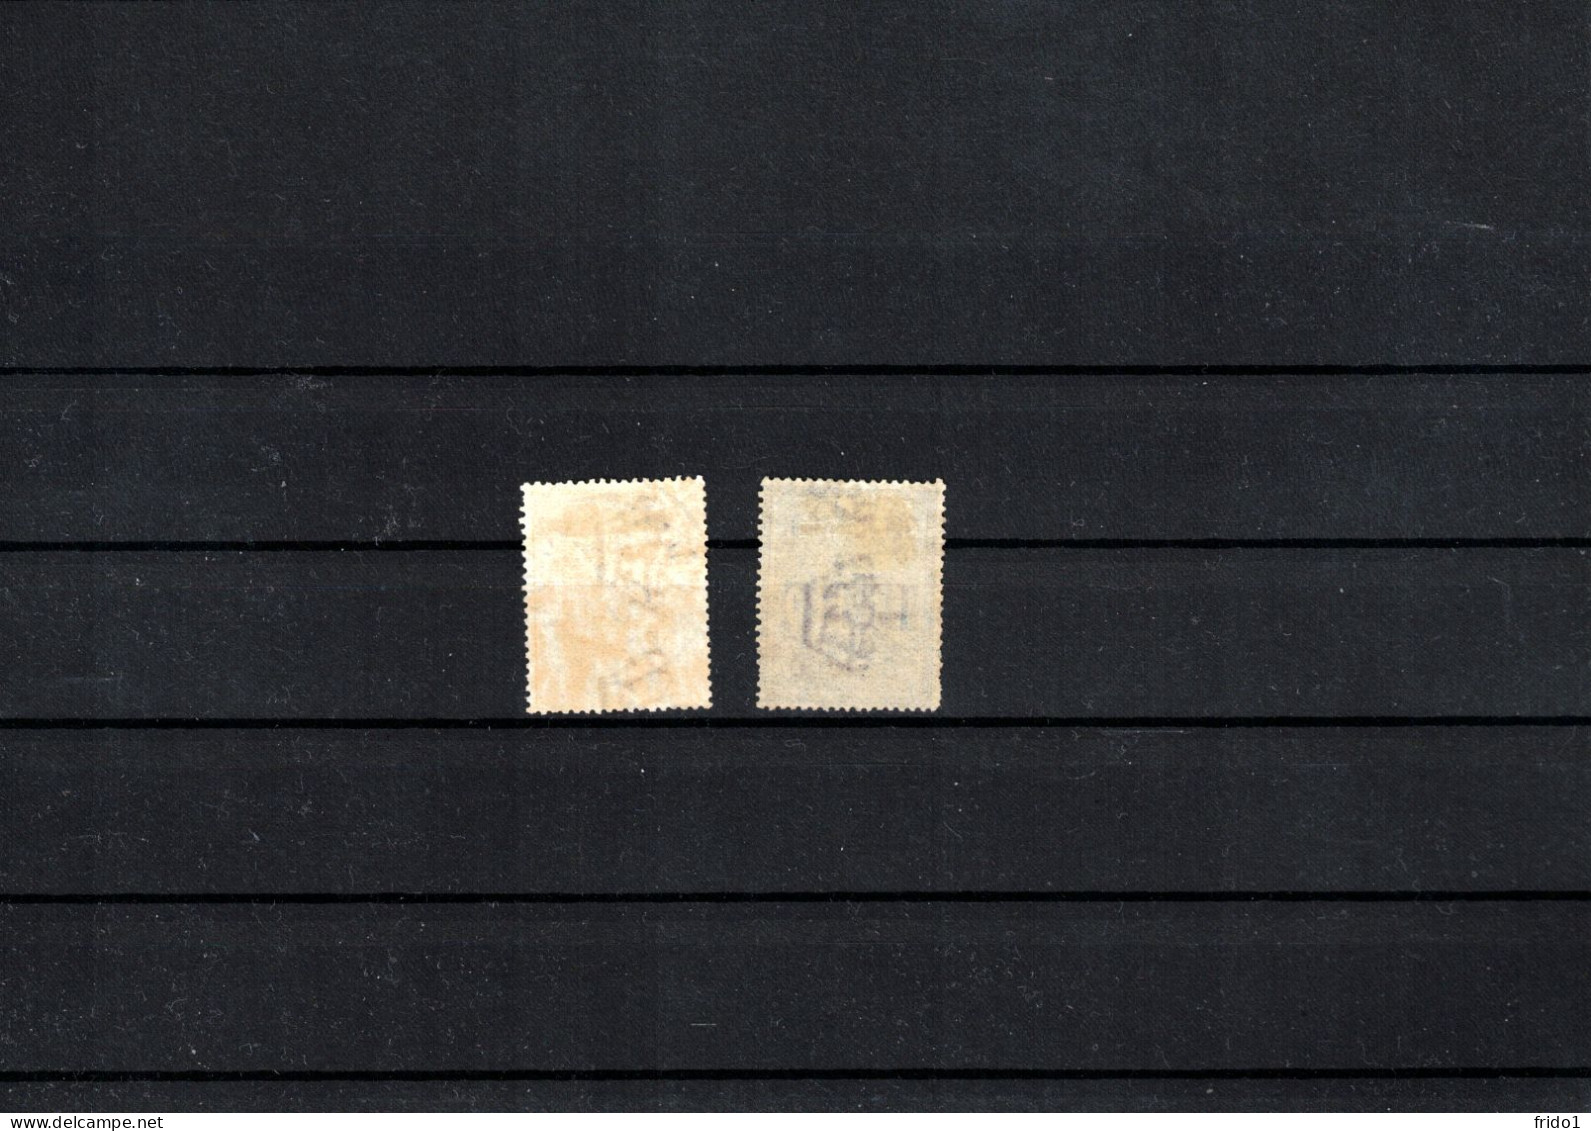 Italy / Italia 1903 Tax Stamps Sauber Gestempelt / Fine Used - Postage Due